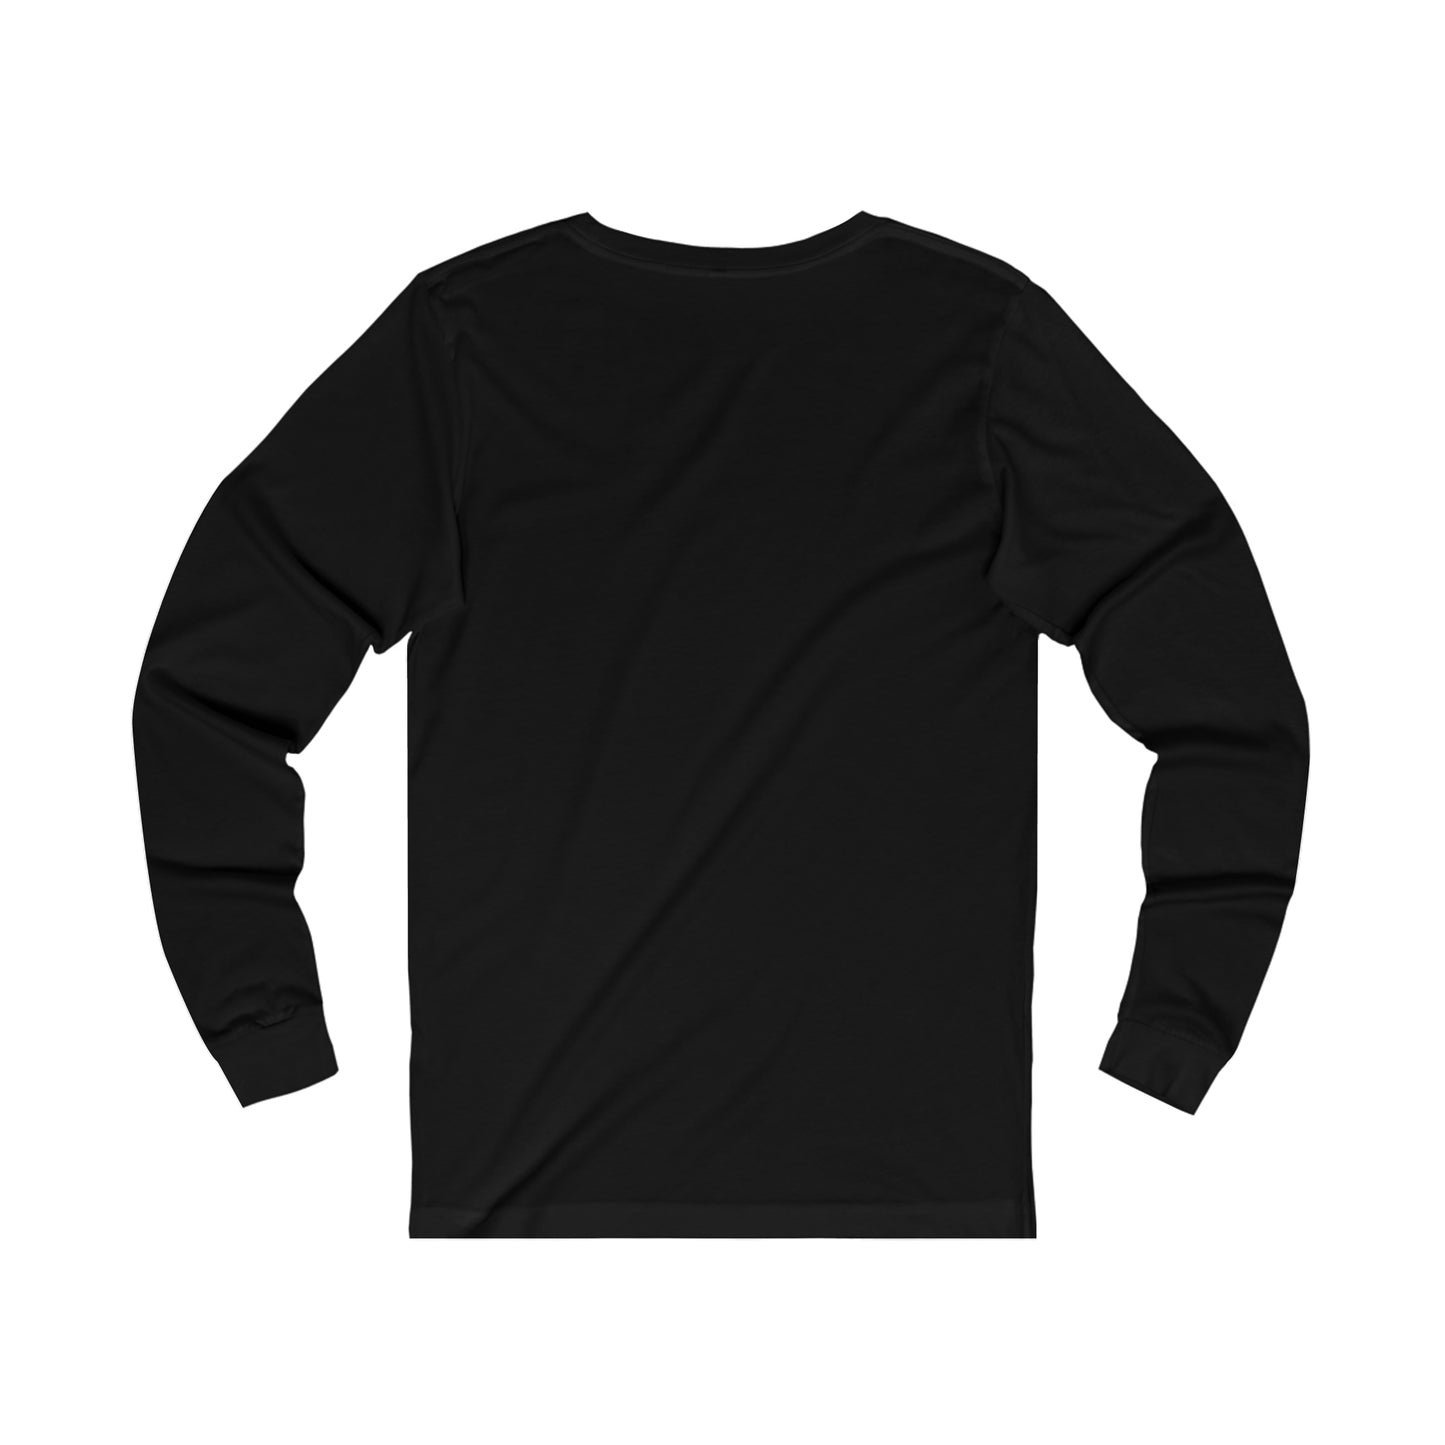 Large Raindrop - Unisex Long Sleeve T-Shirt